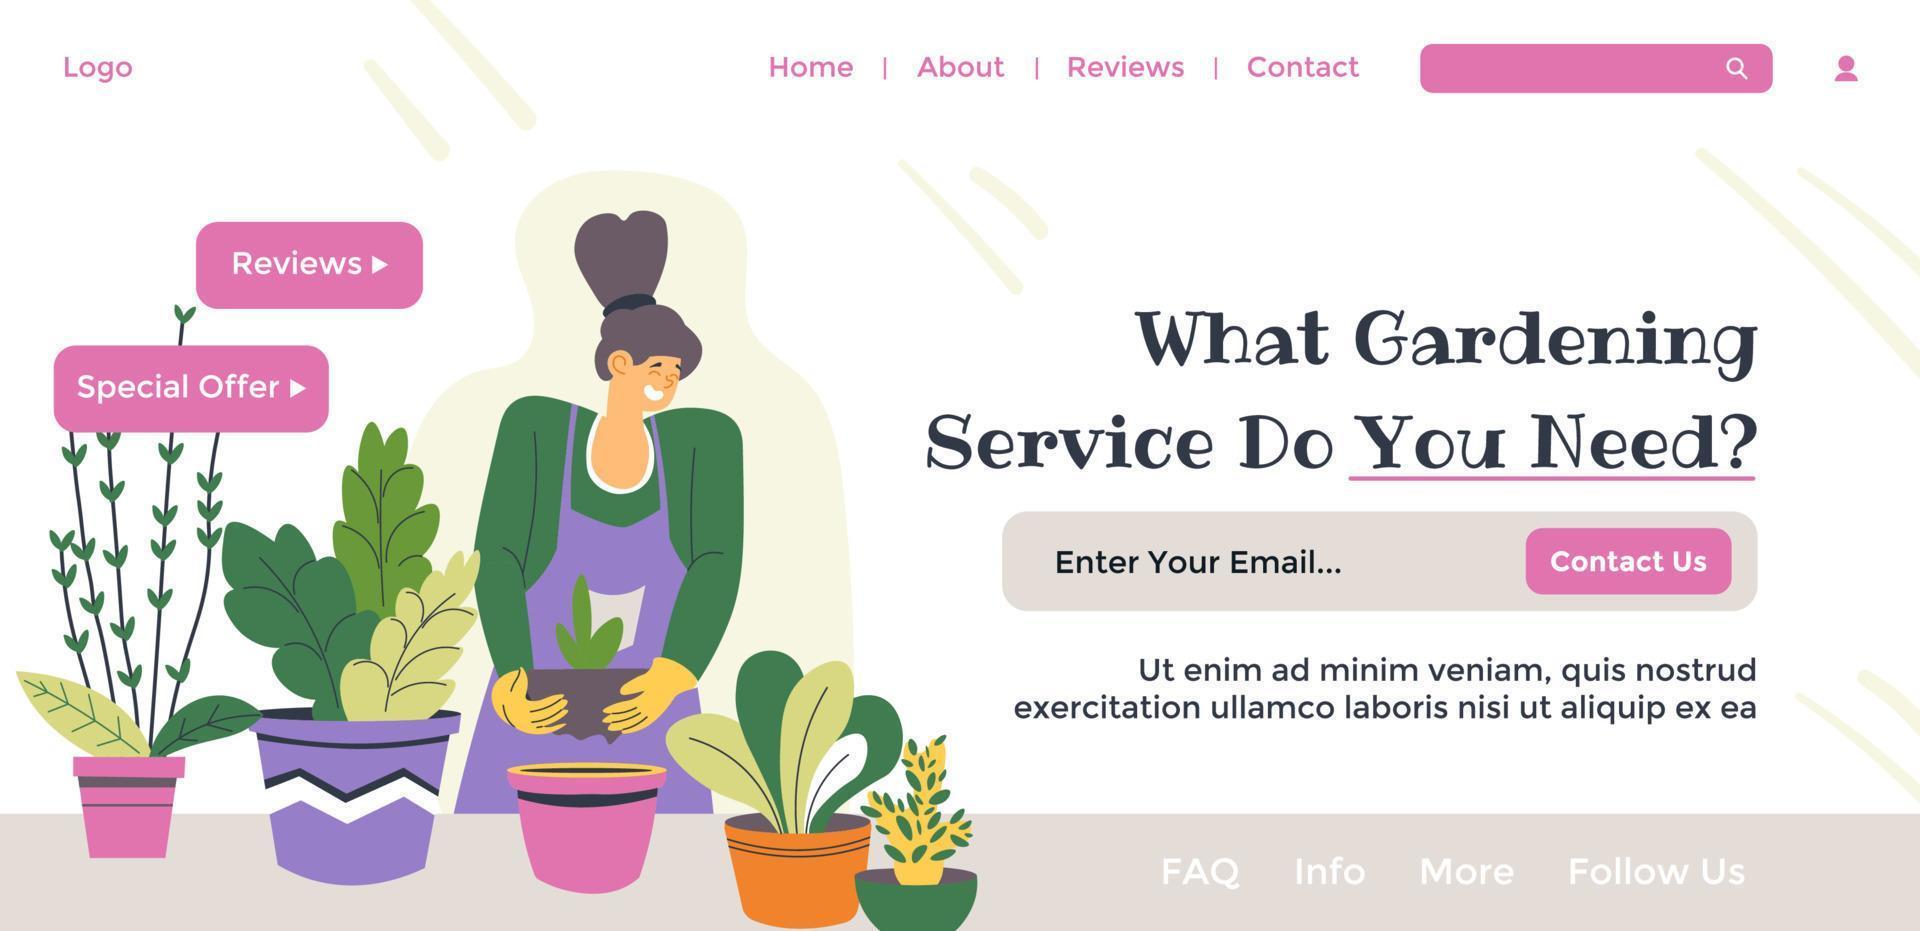 qué jardinería Servicio hacer usted necesidad, jardinero web vector